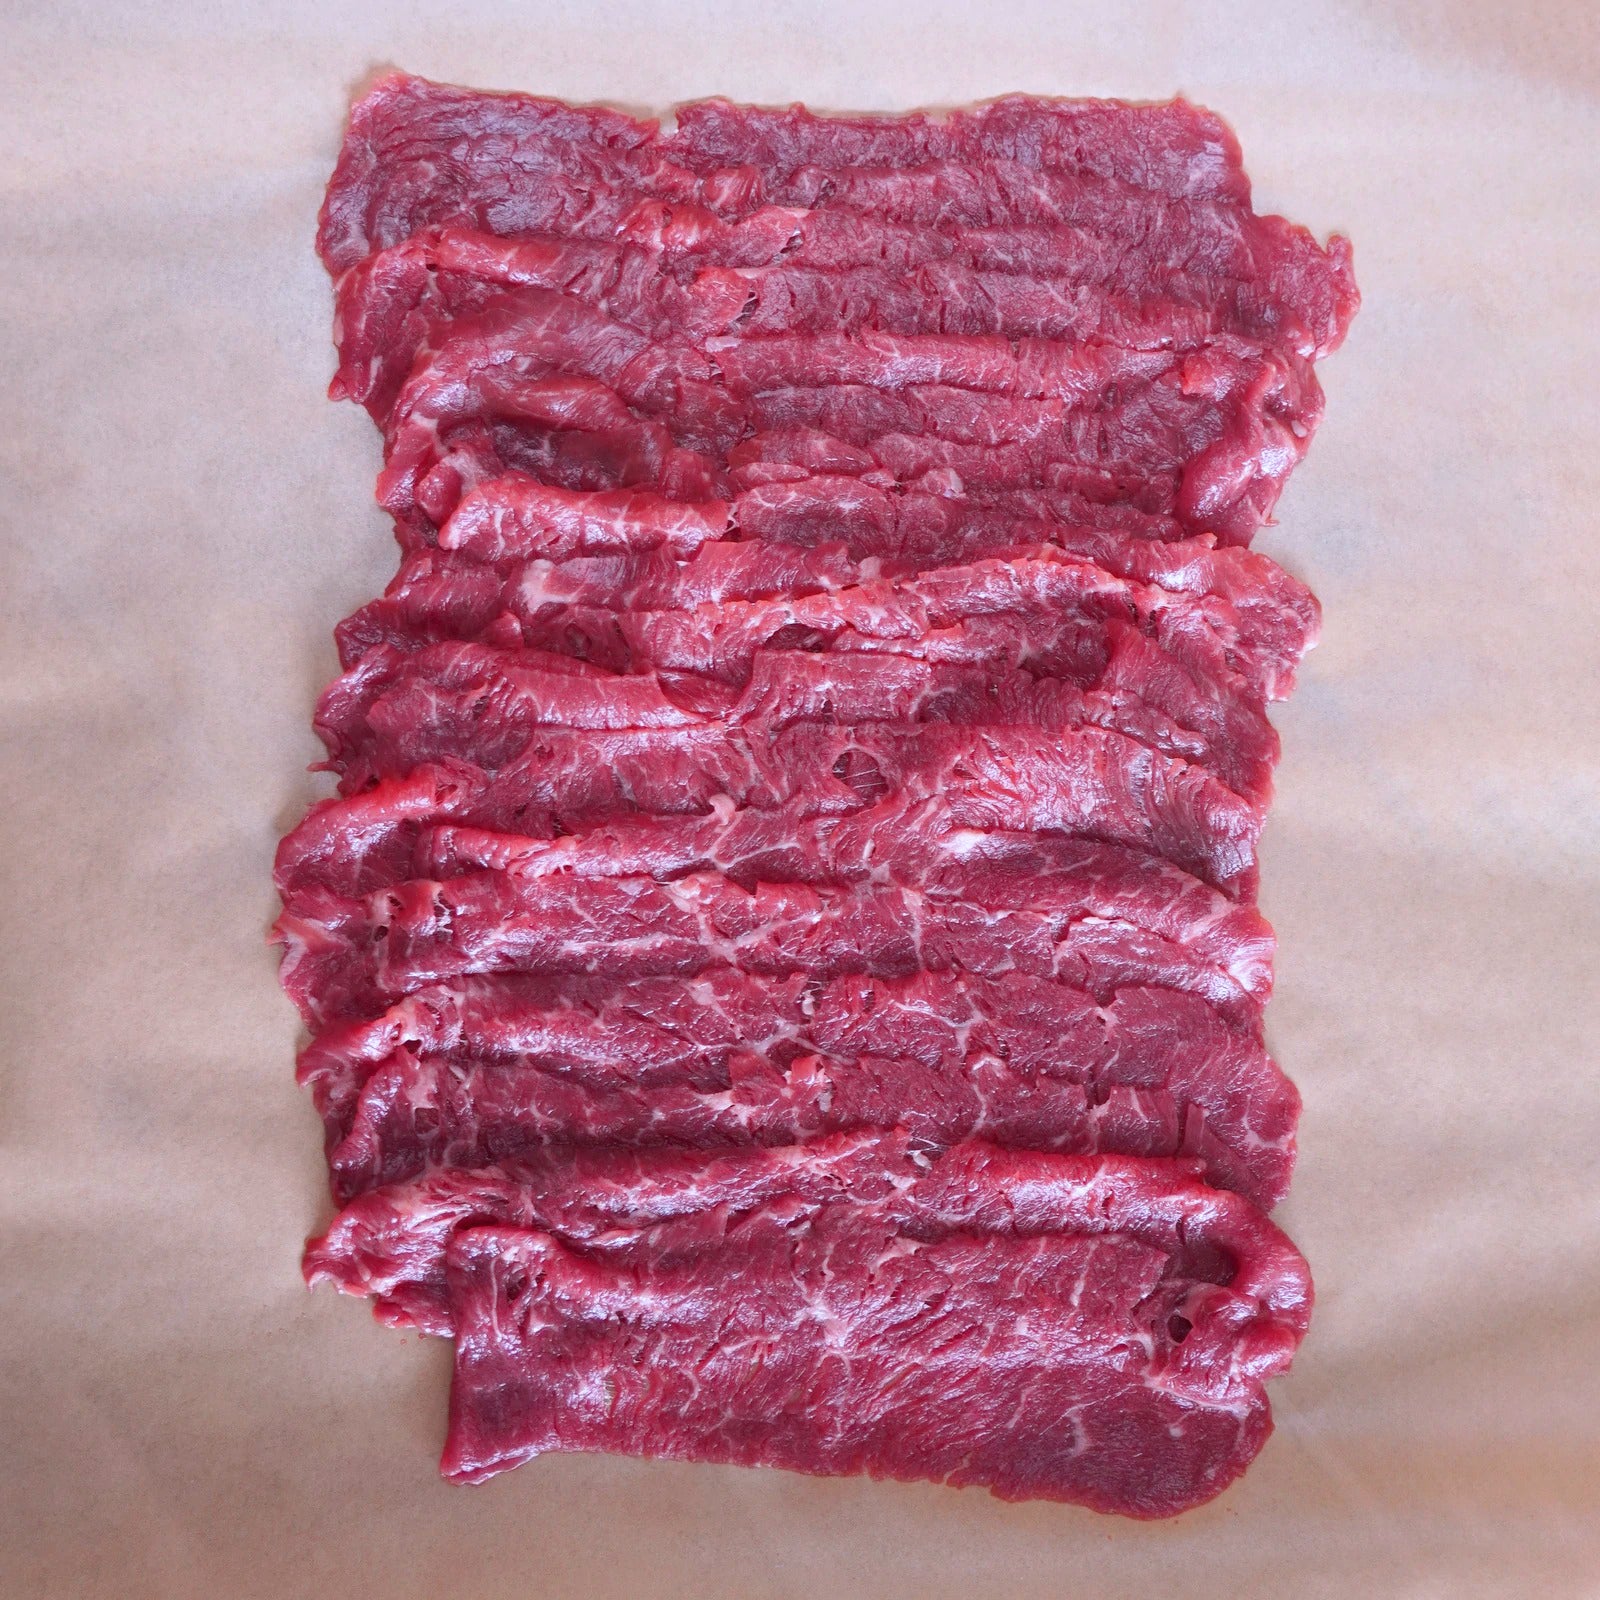 グラスフェッドビーフ プレミアム 牛肉 薄切り すき焼き用 牧草牛 (300g) ホライズンファームズ